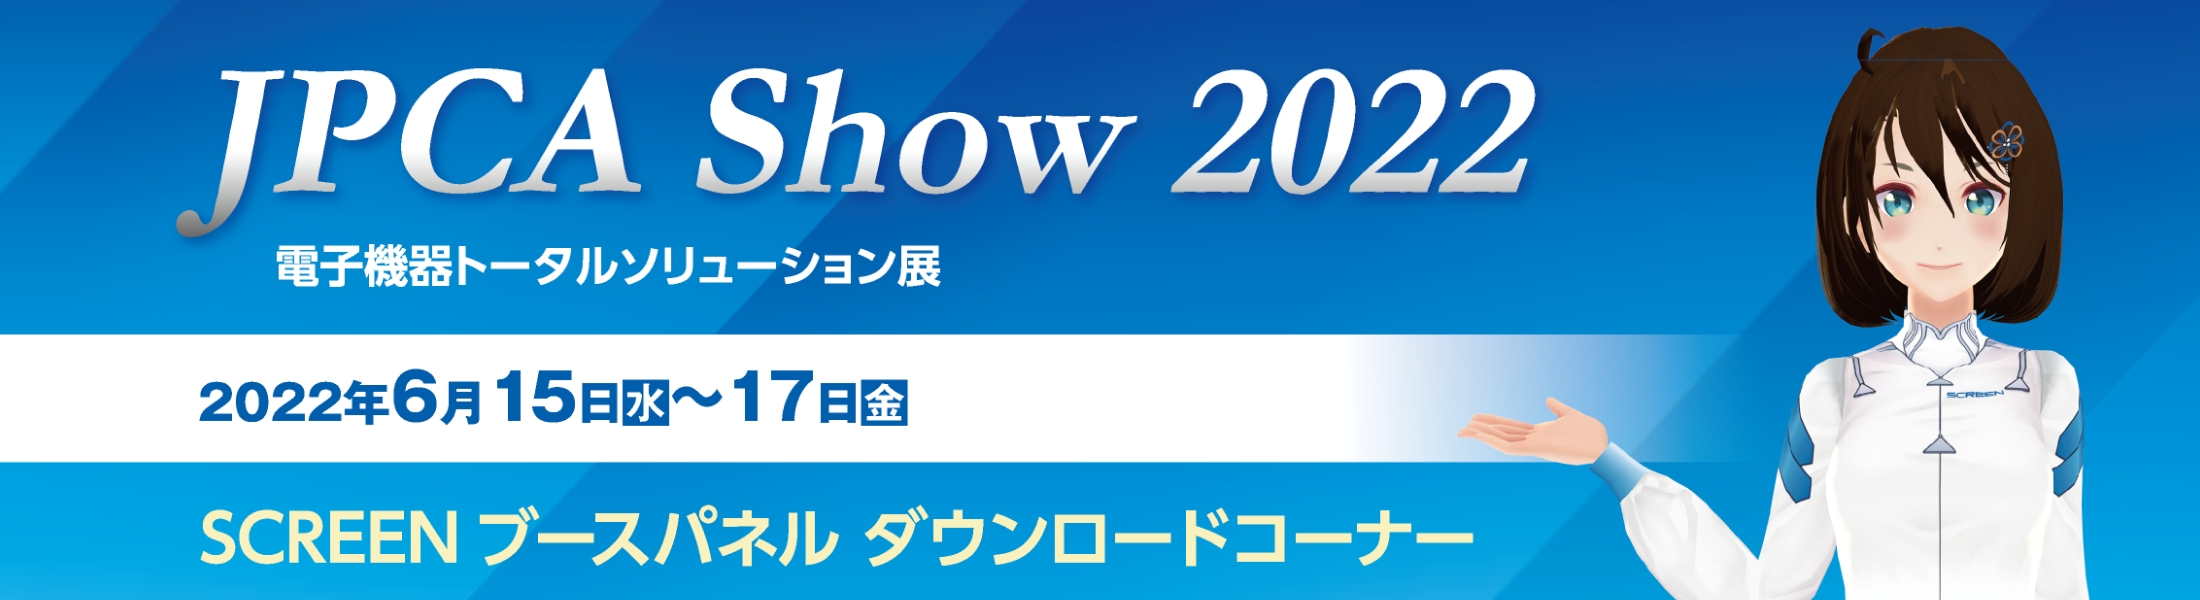 JPCA Show 2022 電子機器トータルソリューション展に出展します